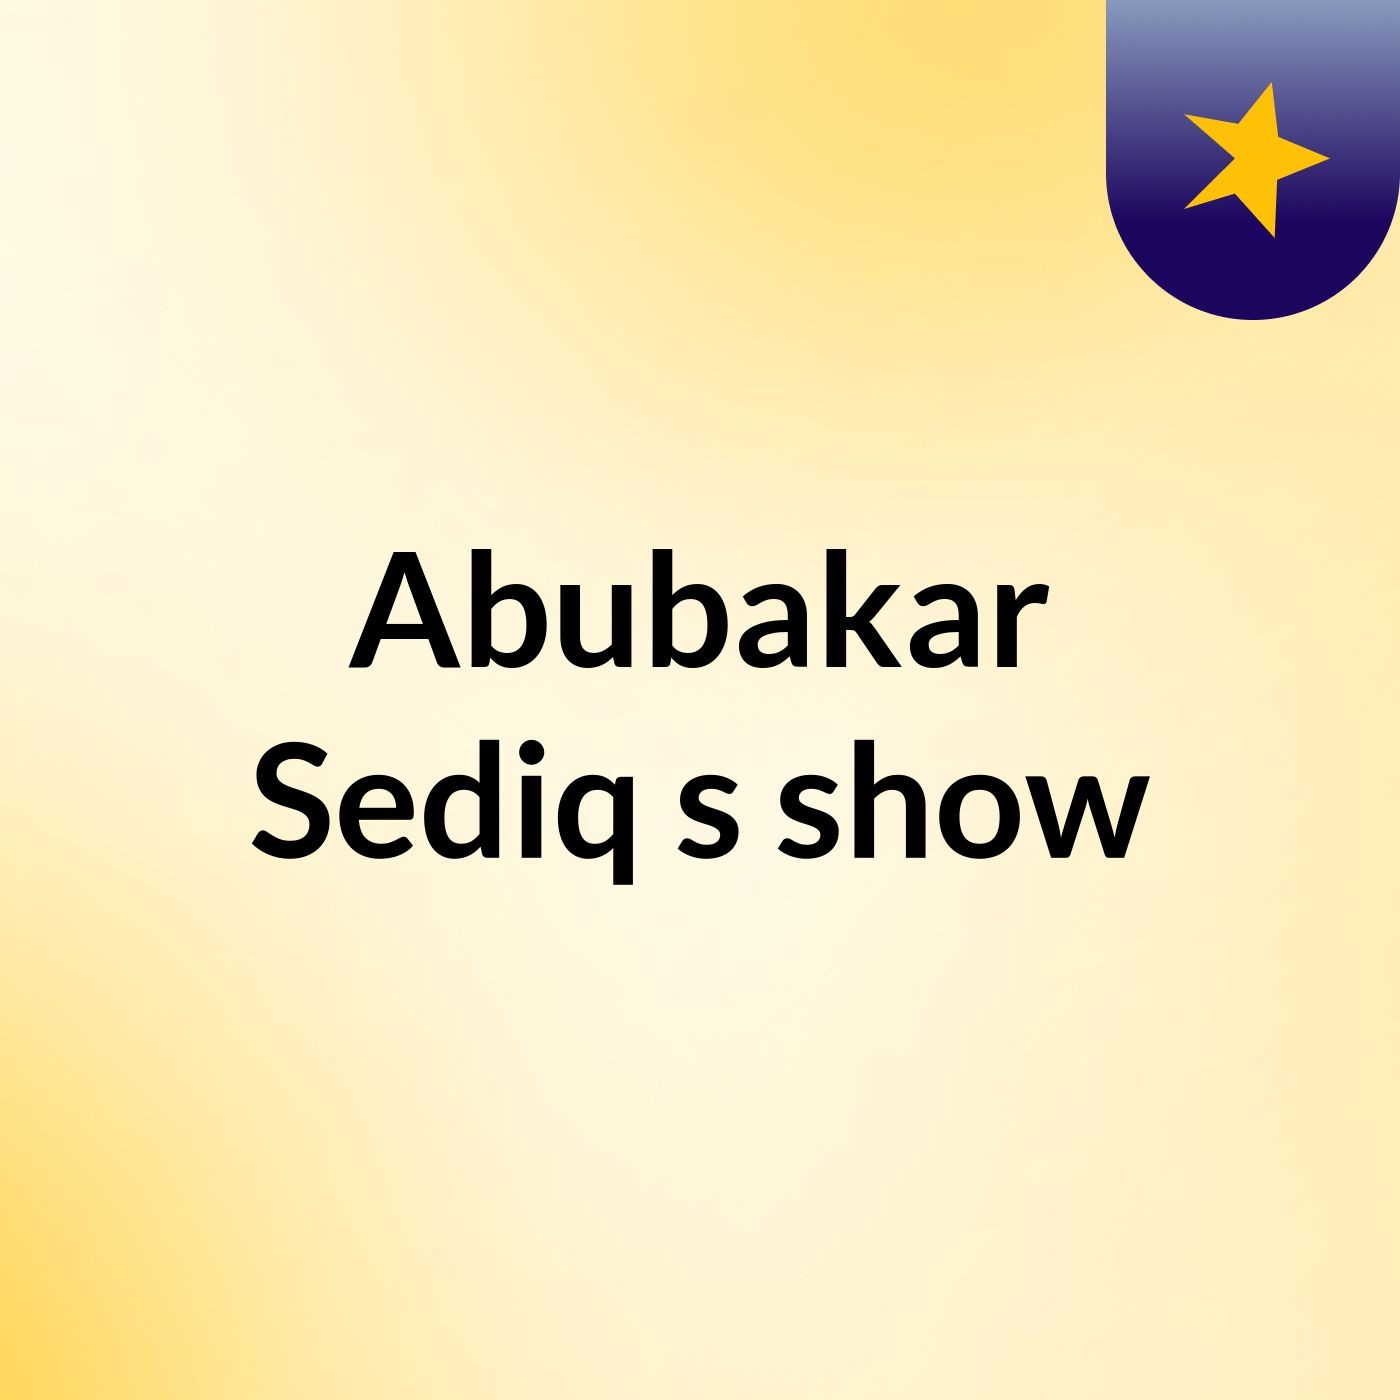 Abubakar Sediq's show